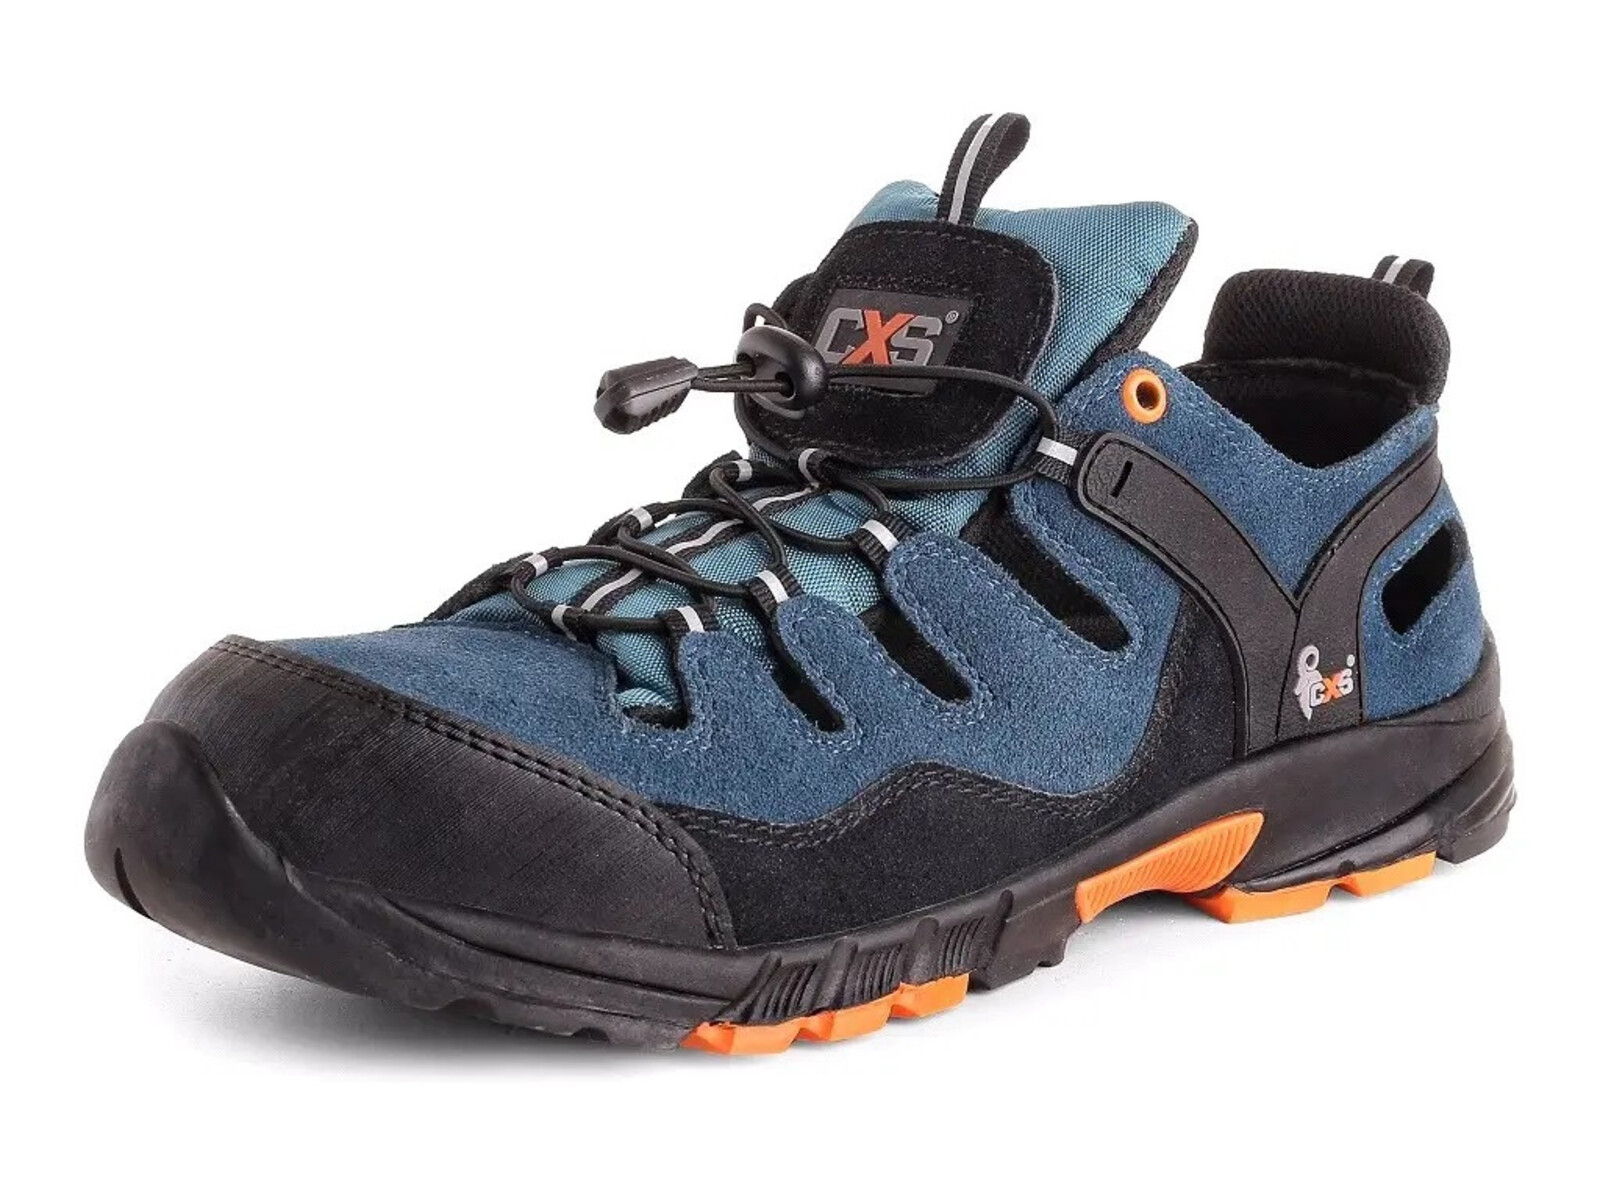 Bezpečnostné sandále CXS Land Cabrera S1 SRC - veľkosť: 35, farba: modrá/oranžová